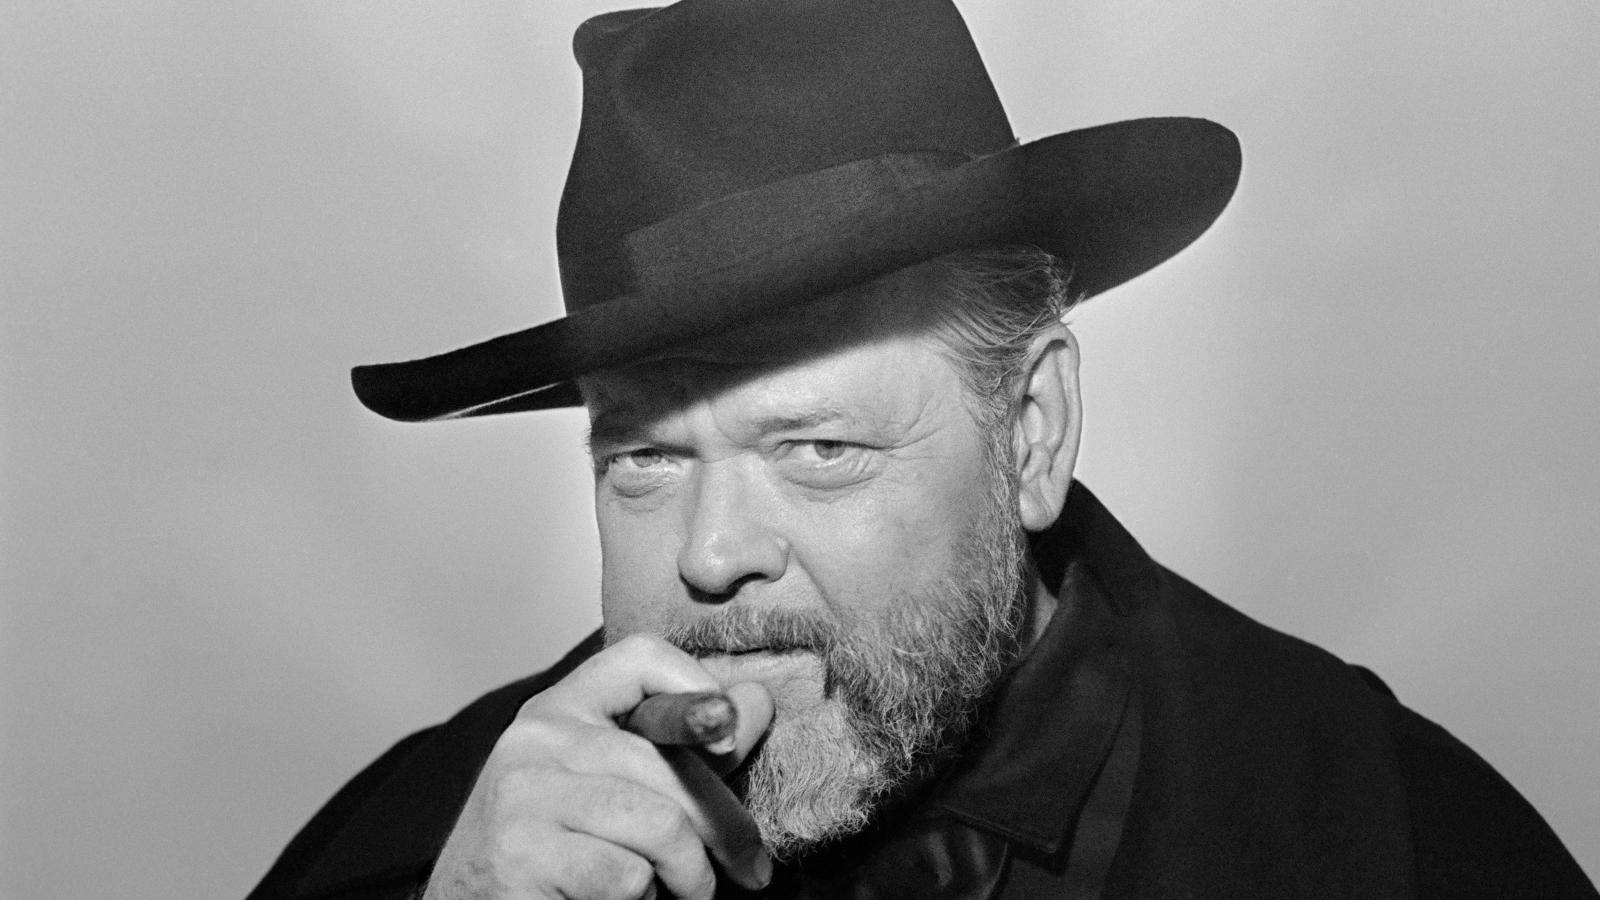 O Famoso Ator-cineasta Orson Welles É O Tema Deste Impressionante Papel De Parede Em Preto E Branco Relacionado A Computador Ou Celular. Papel de Parede